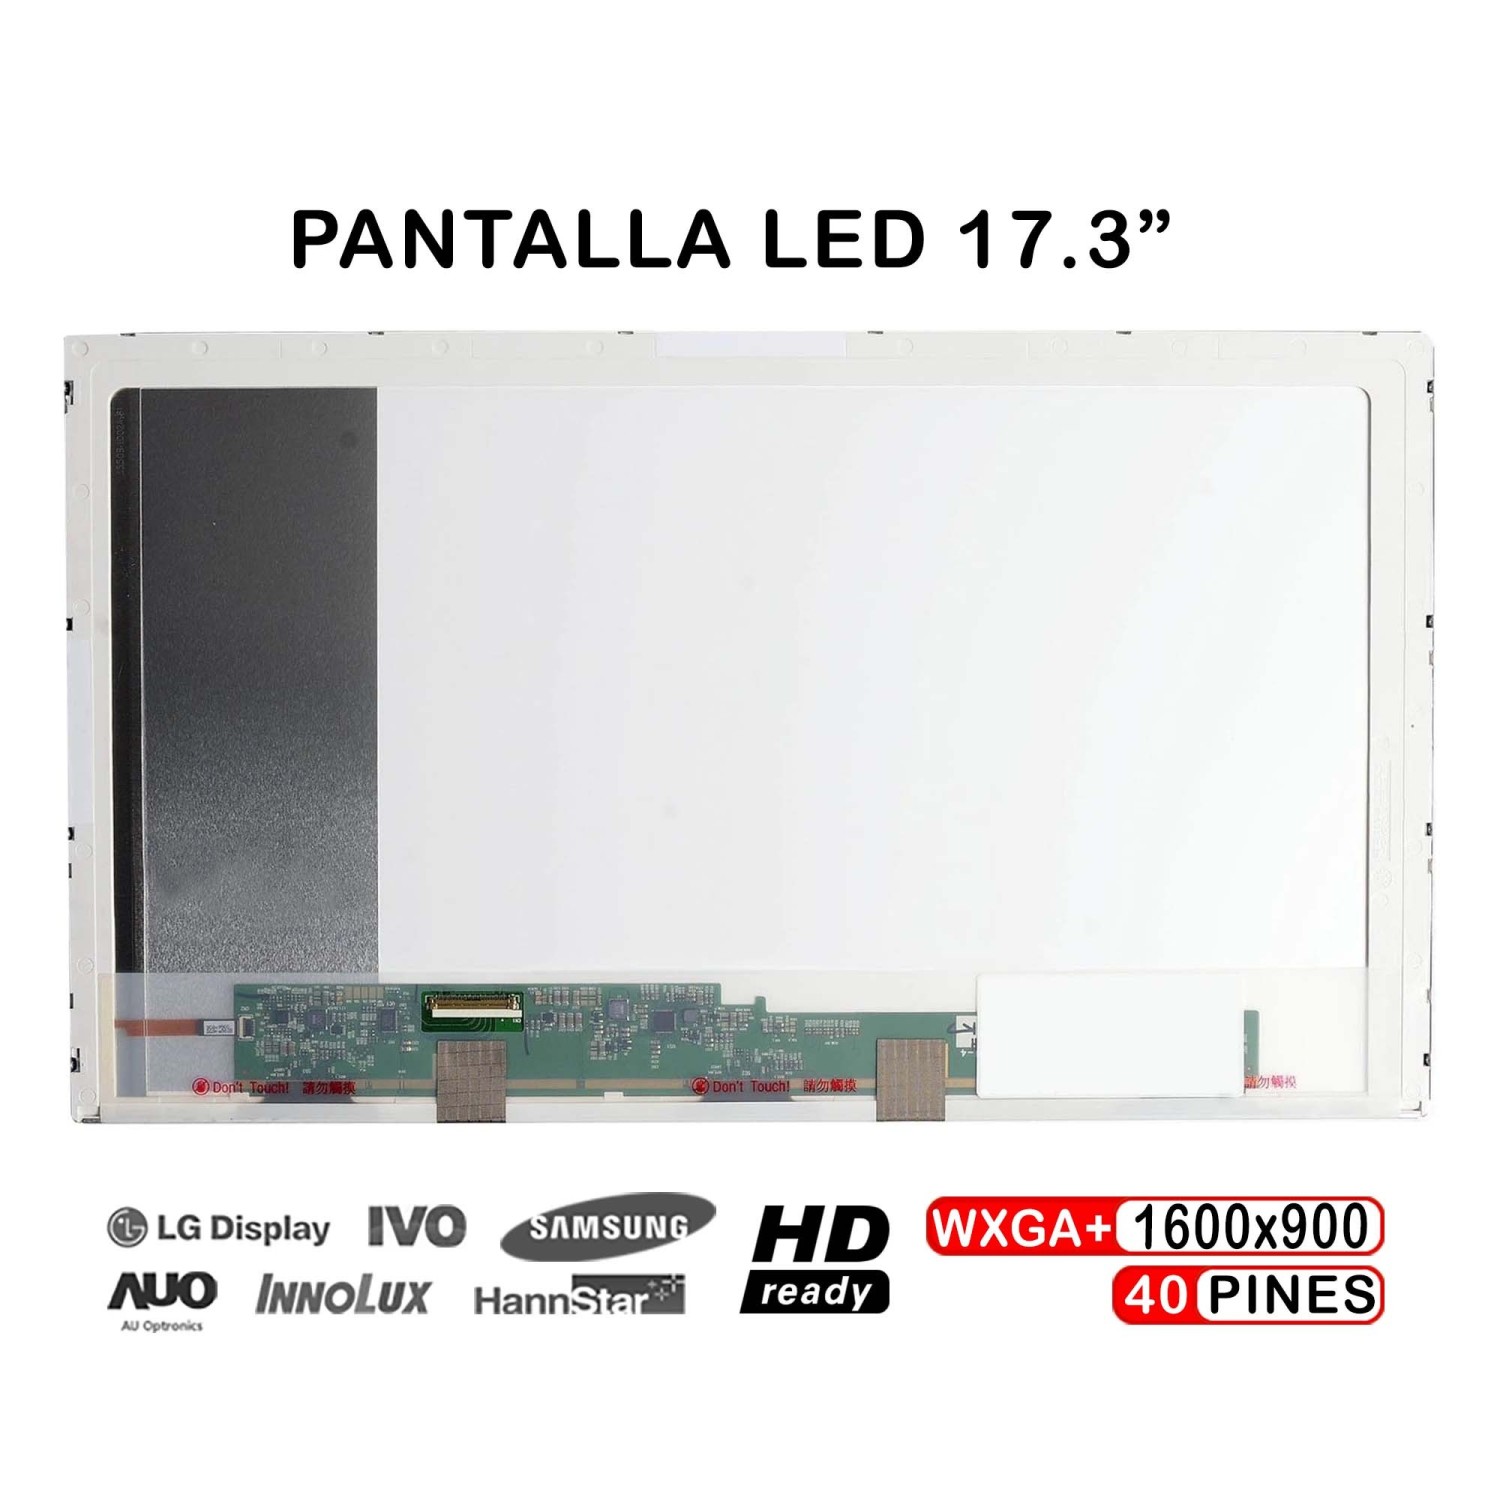 PANTALLA LED DE 17.3" PARA PORTÁTIL HP PAVILION 17-E120SS